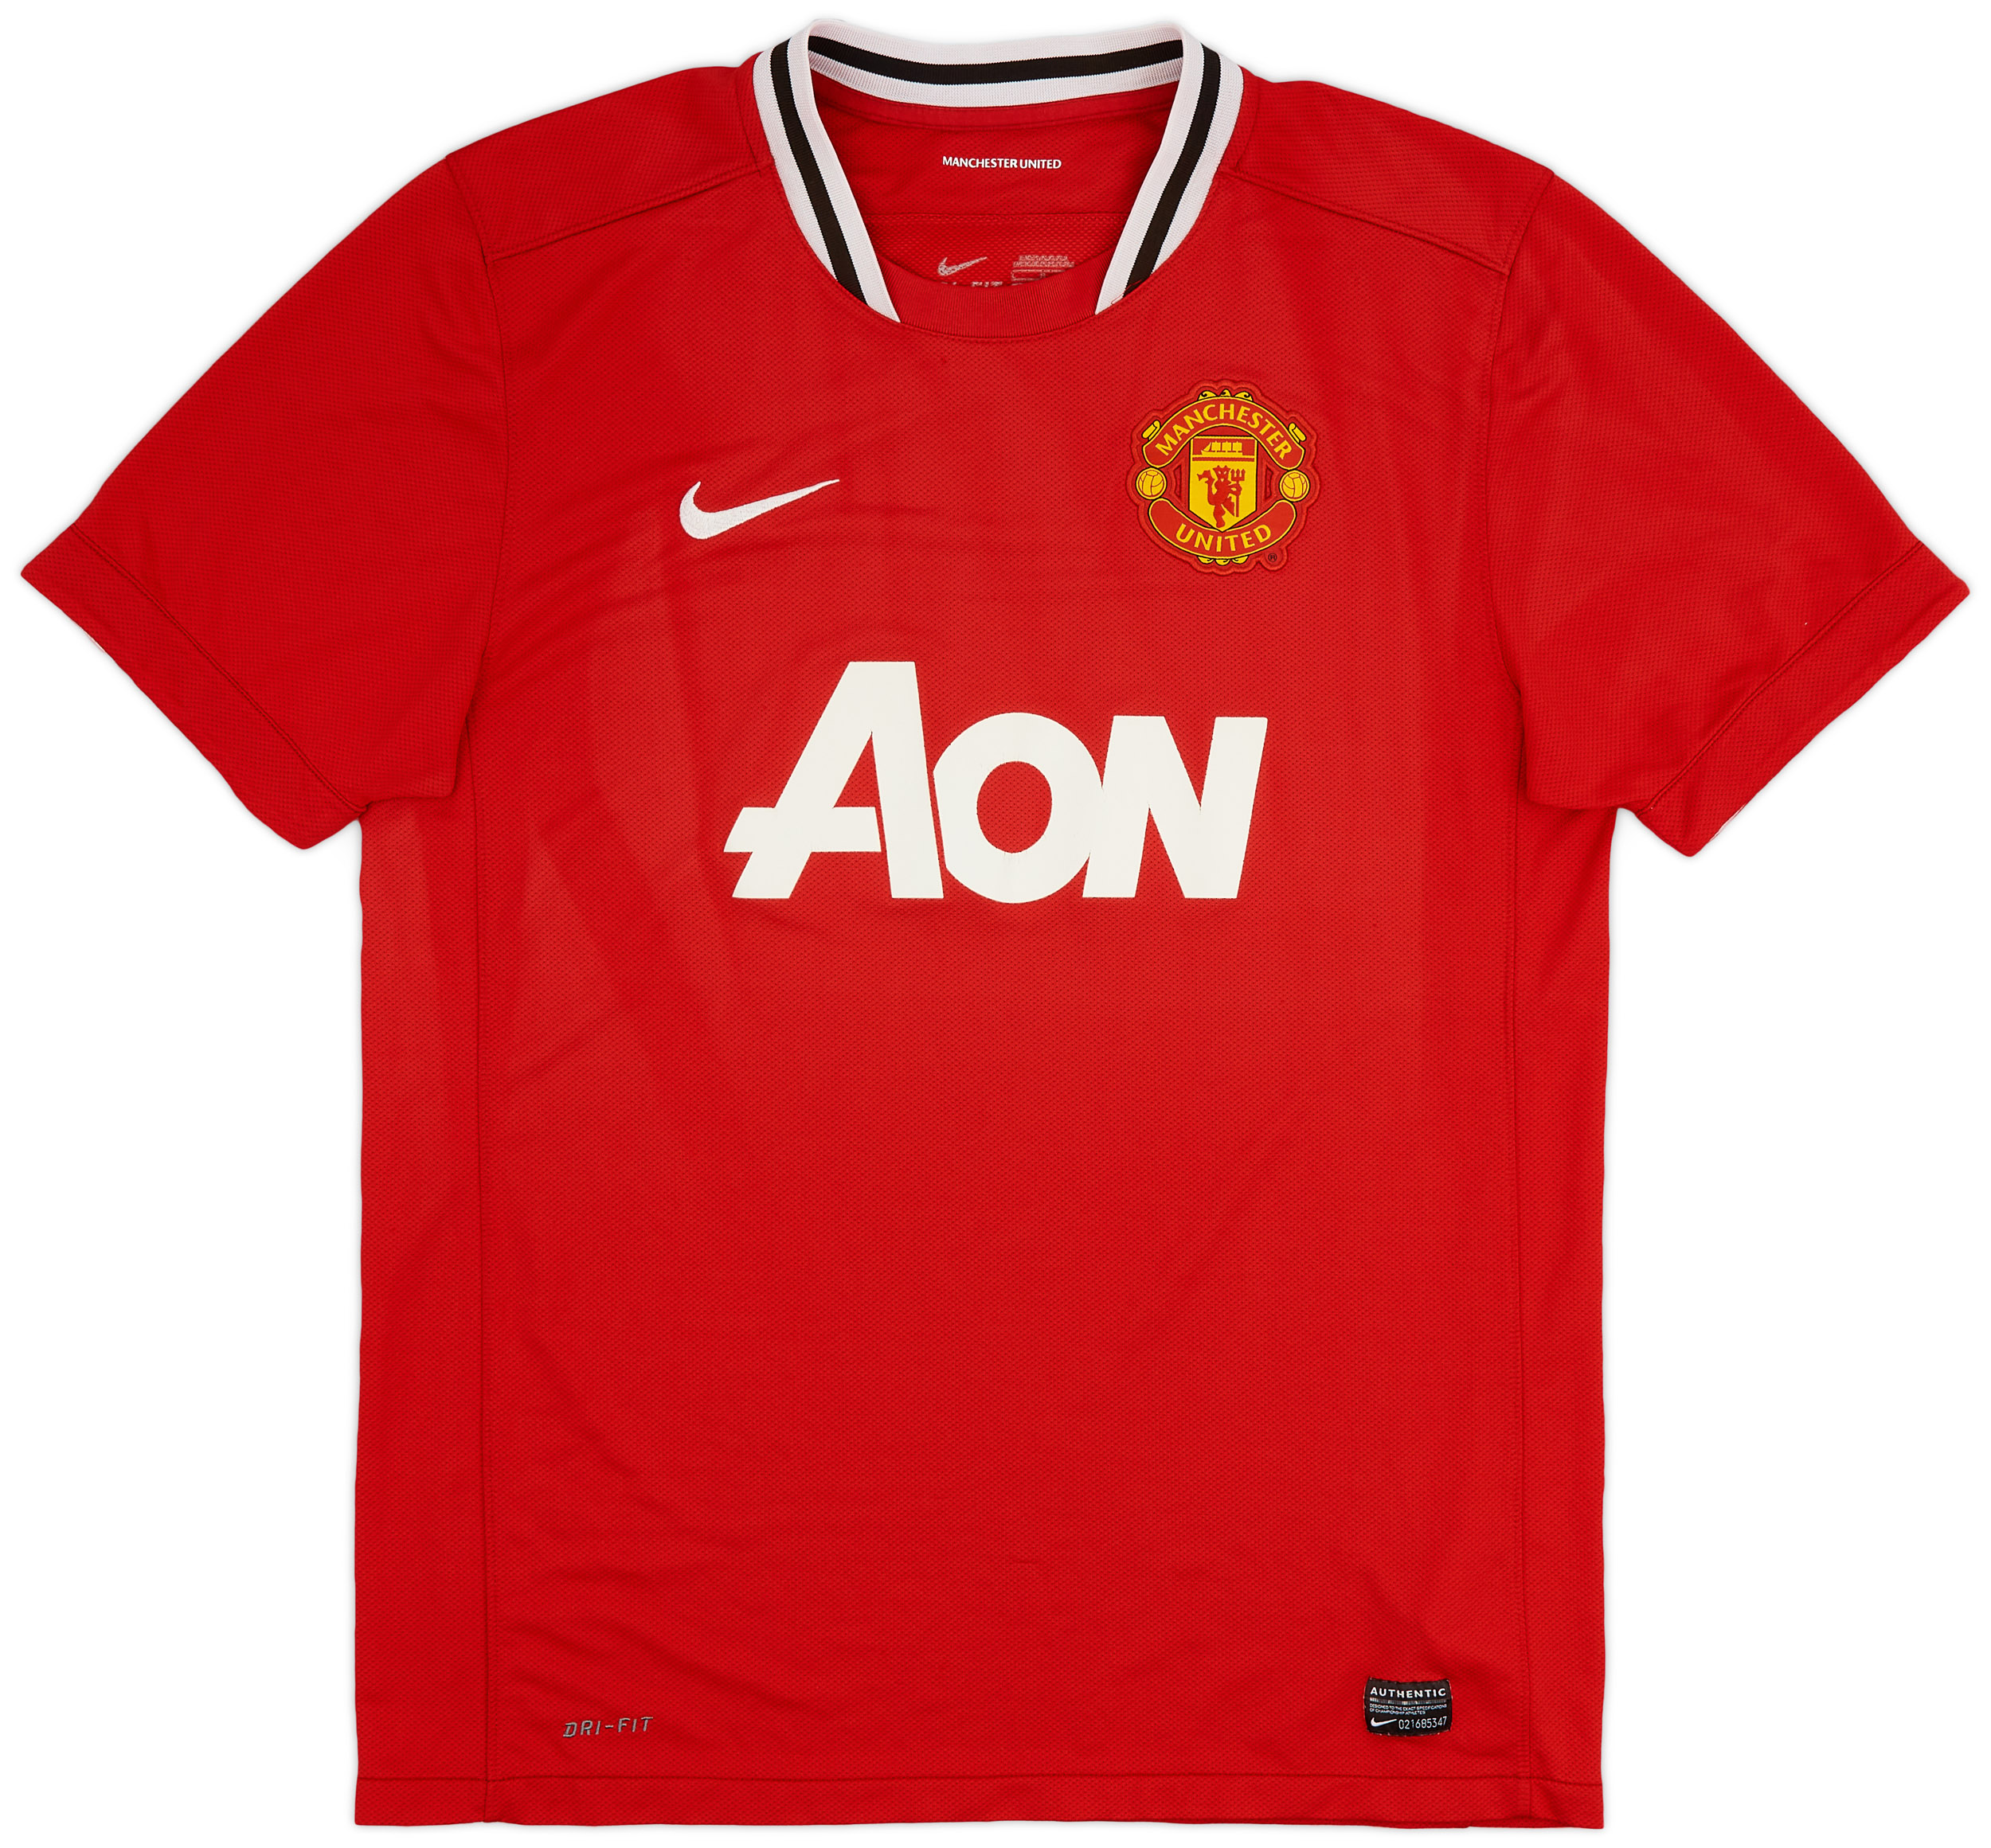 2011-12 Manchester United Home Shirt - Fair 4/10 - ()